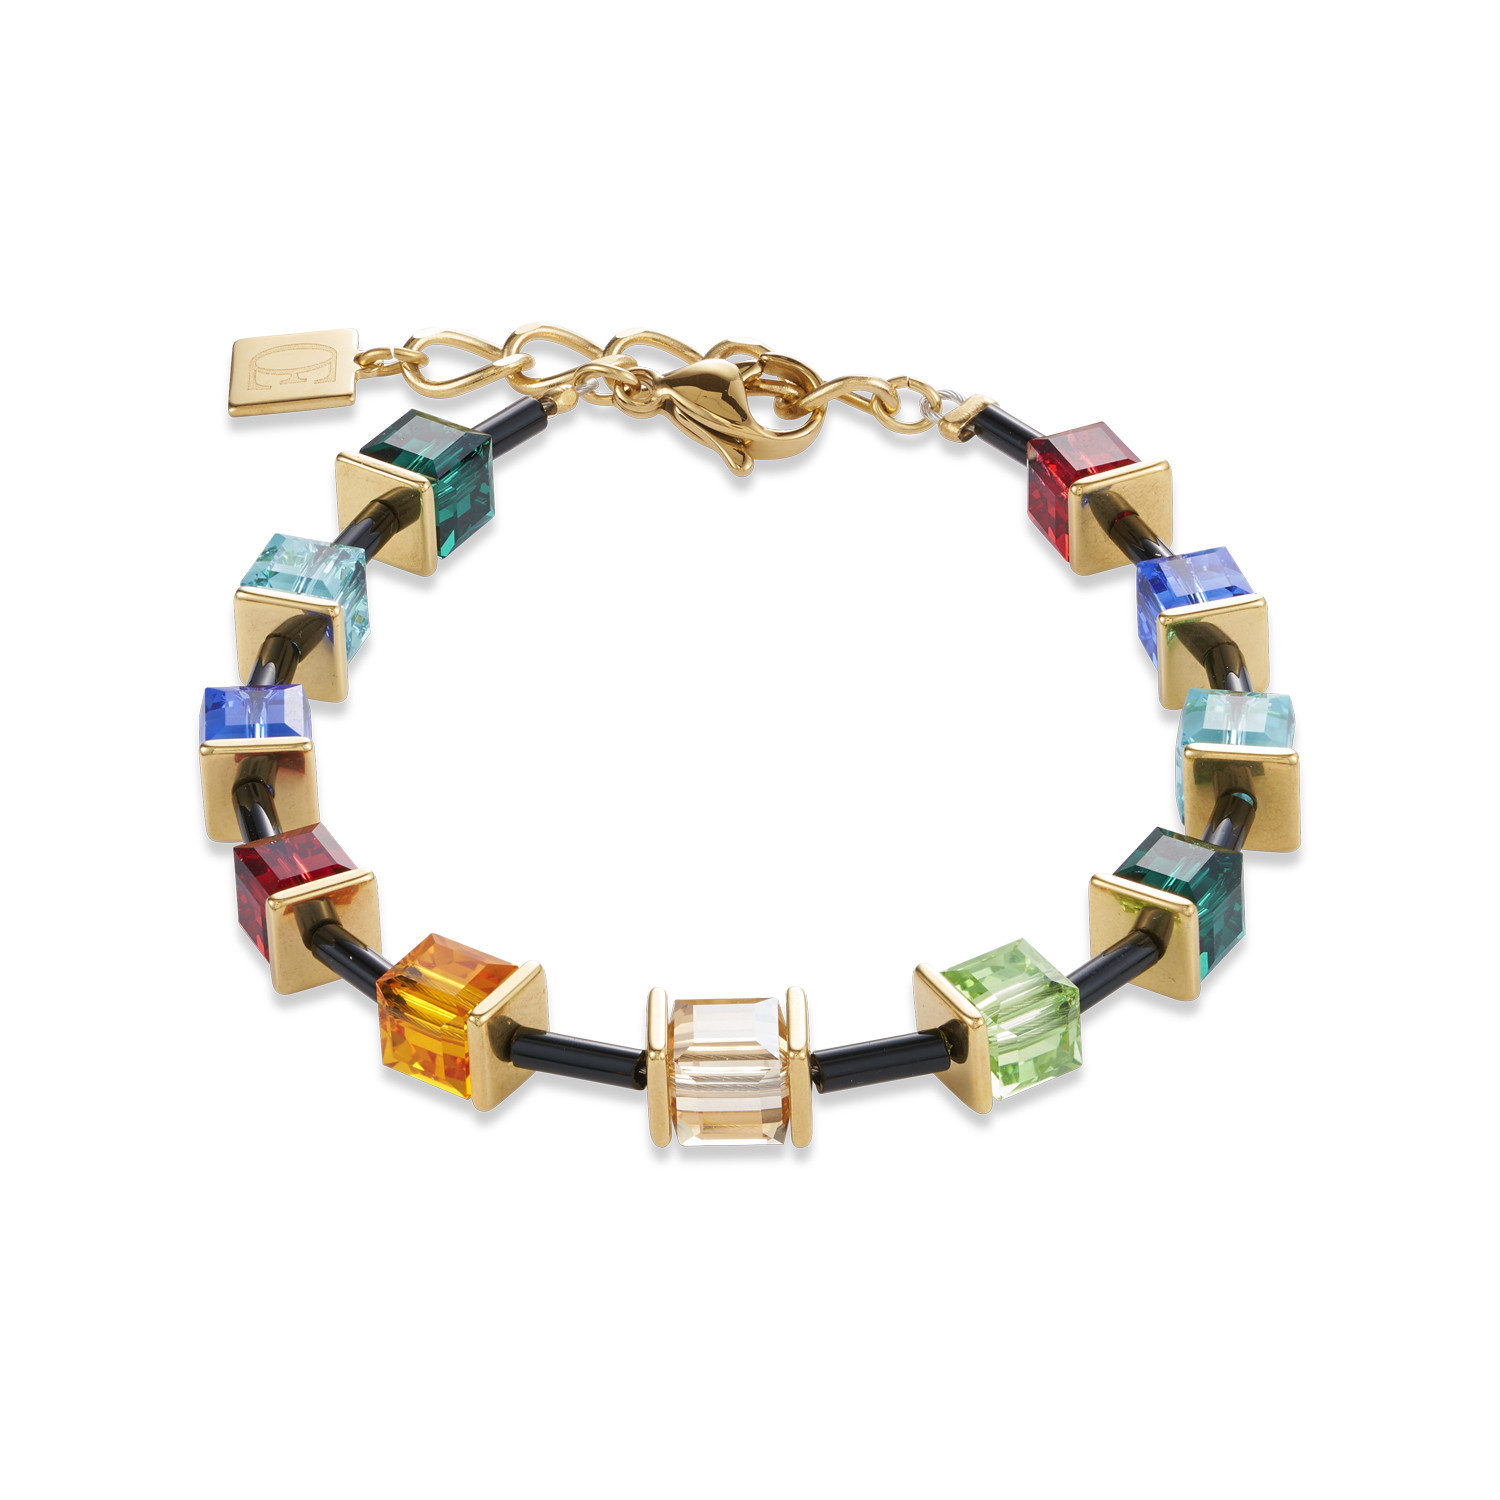 Bracelet Coeur de Lion édition limitée géocube
multicolore